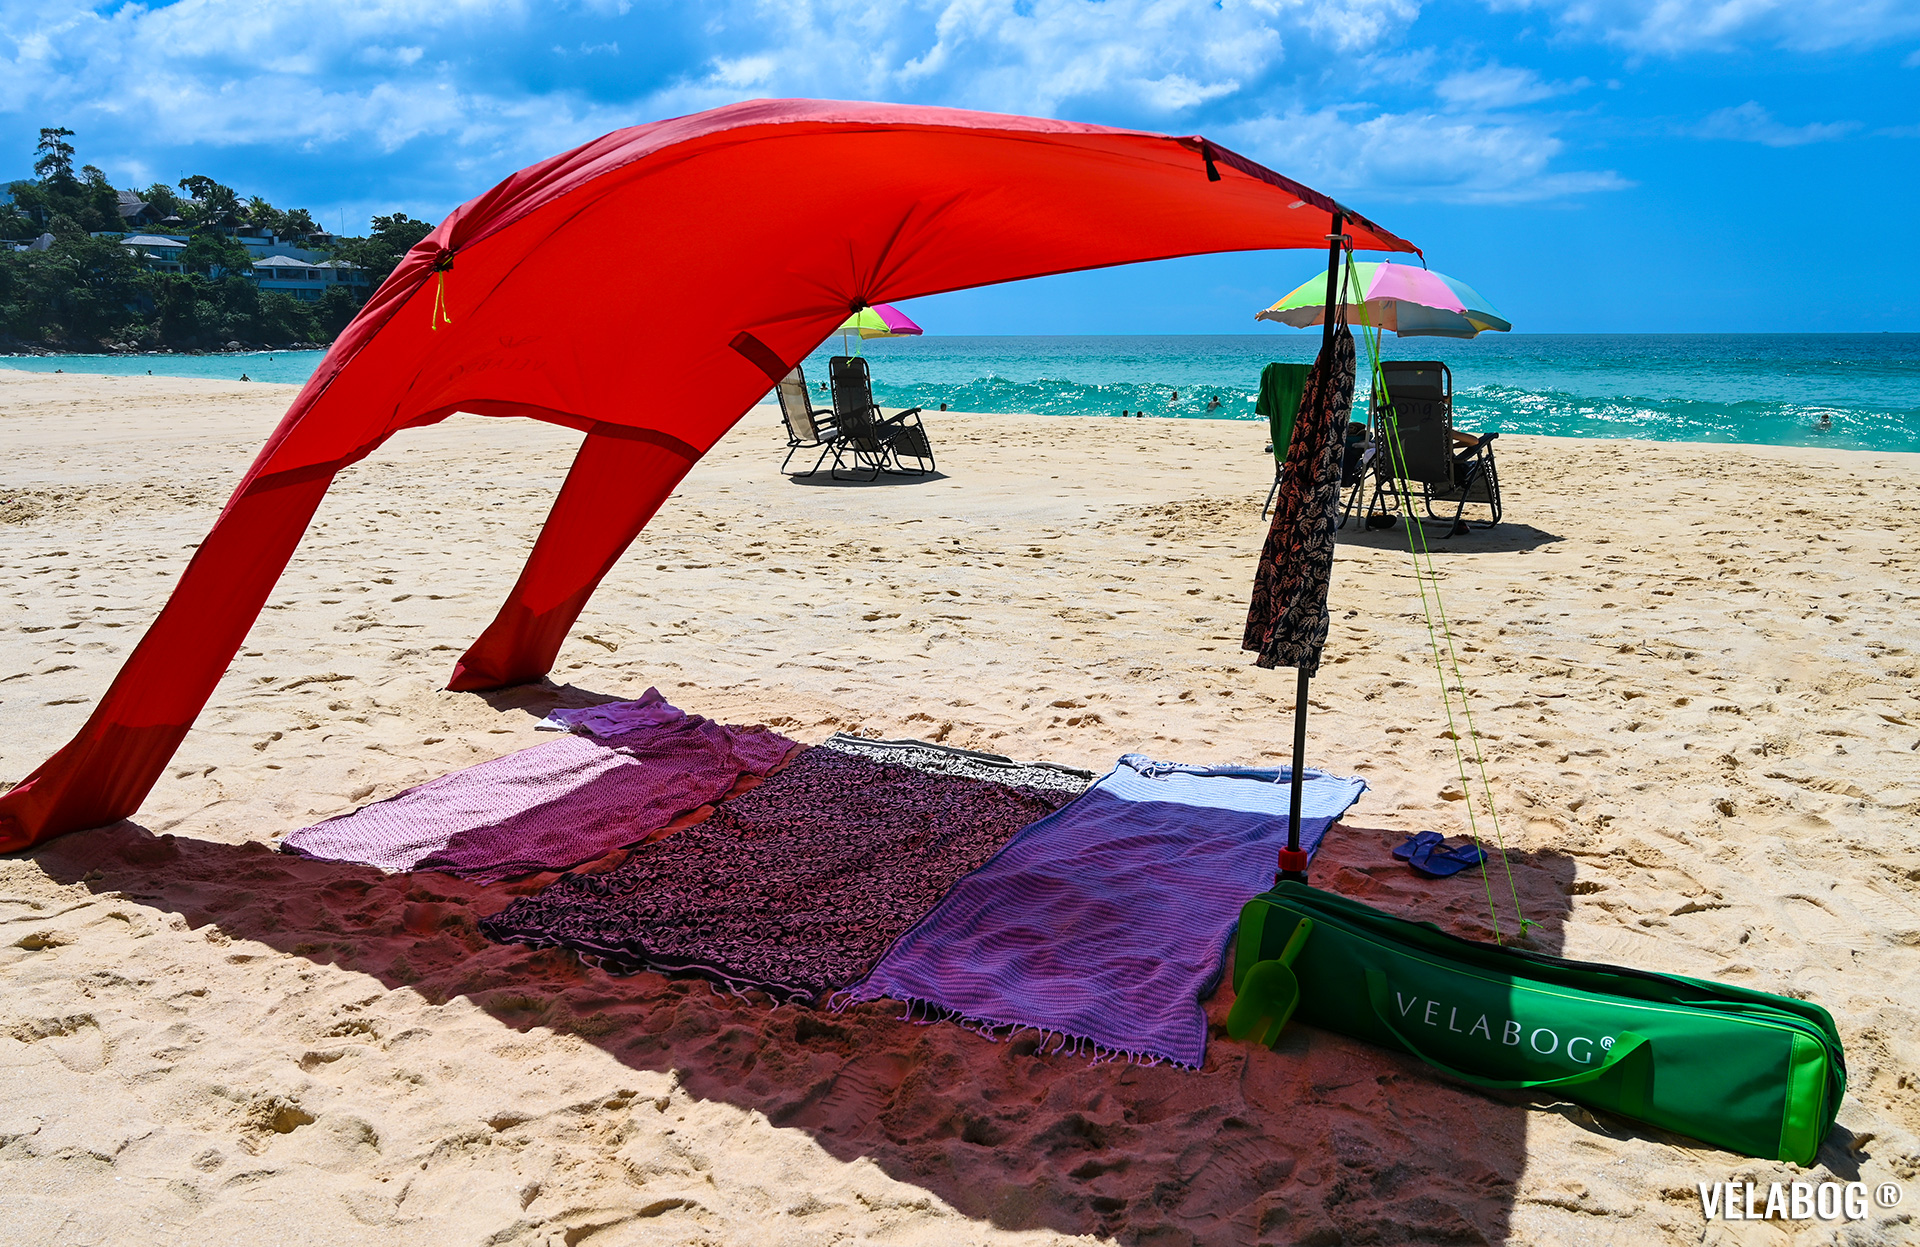 Tenda da spiaggia Velabog Breeze, rossa. Confronto con gli ombrelloni. Ottima protezione dal sole e ampia ombra su spiaggia.